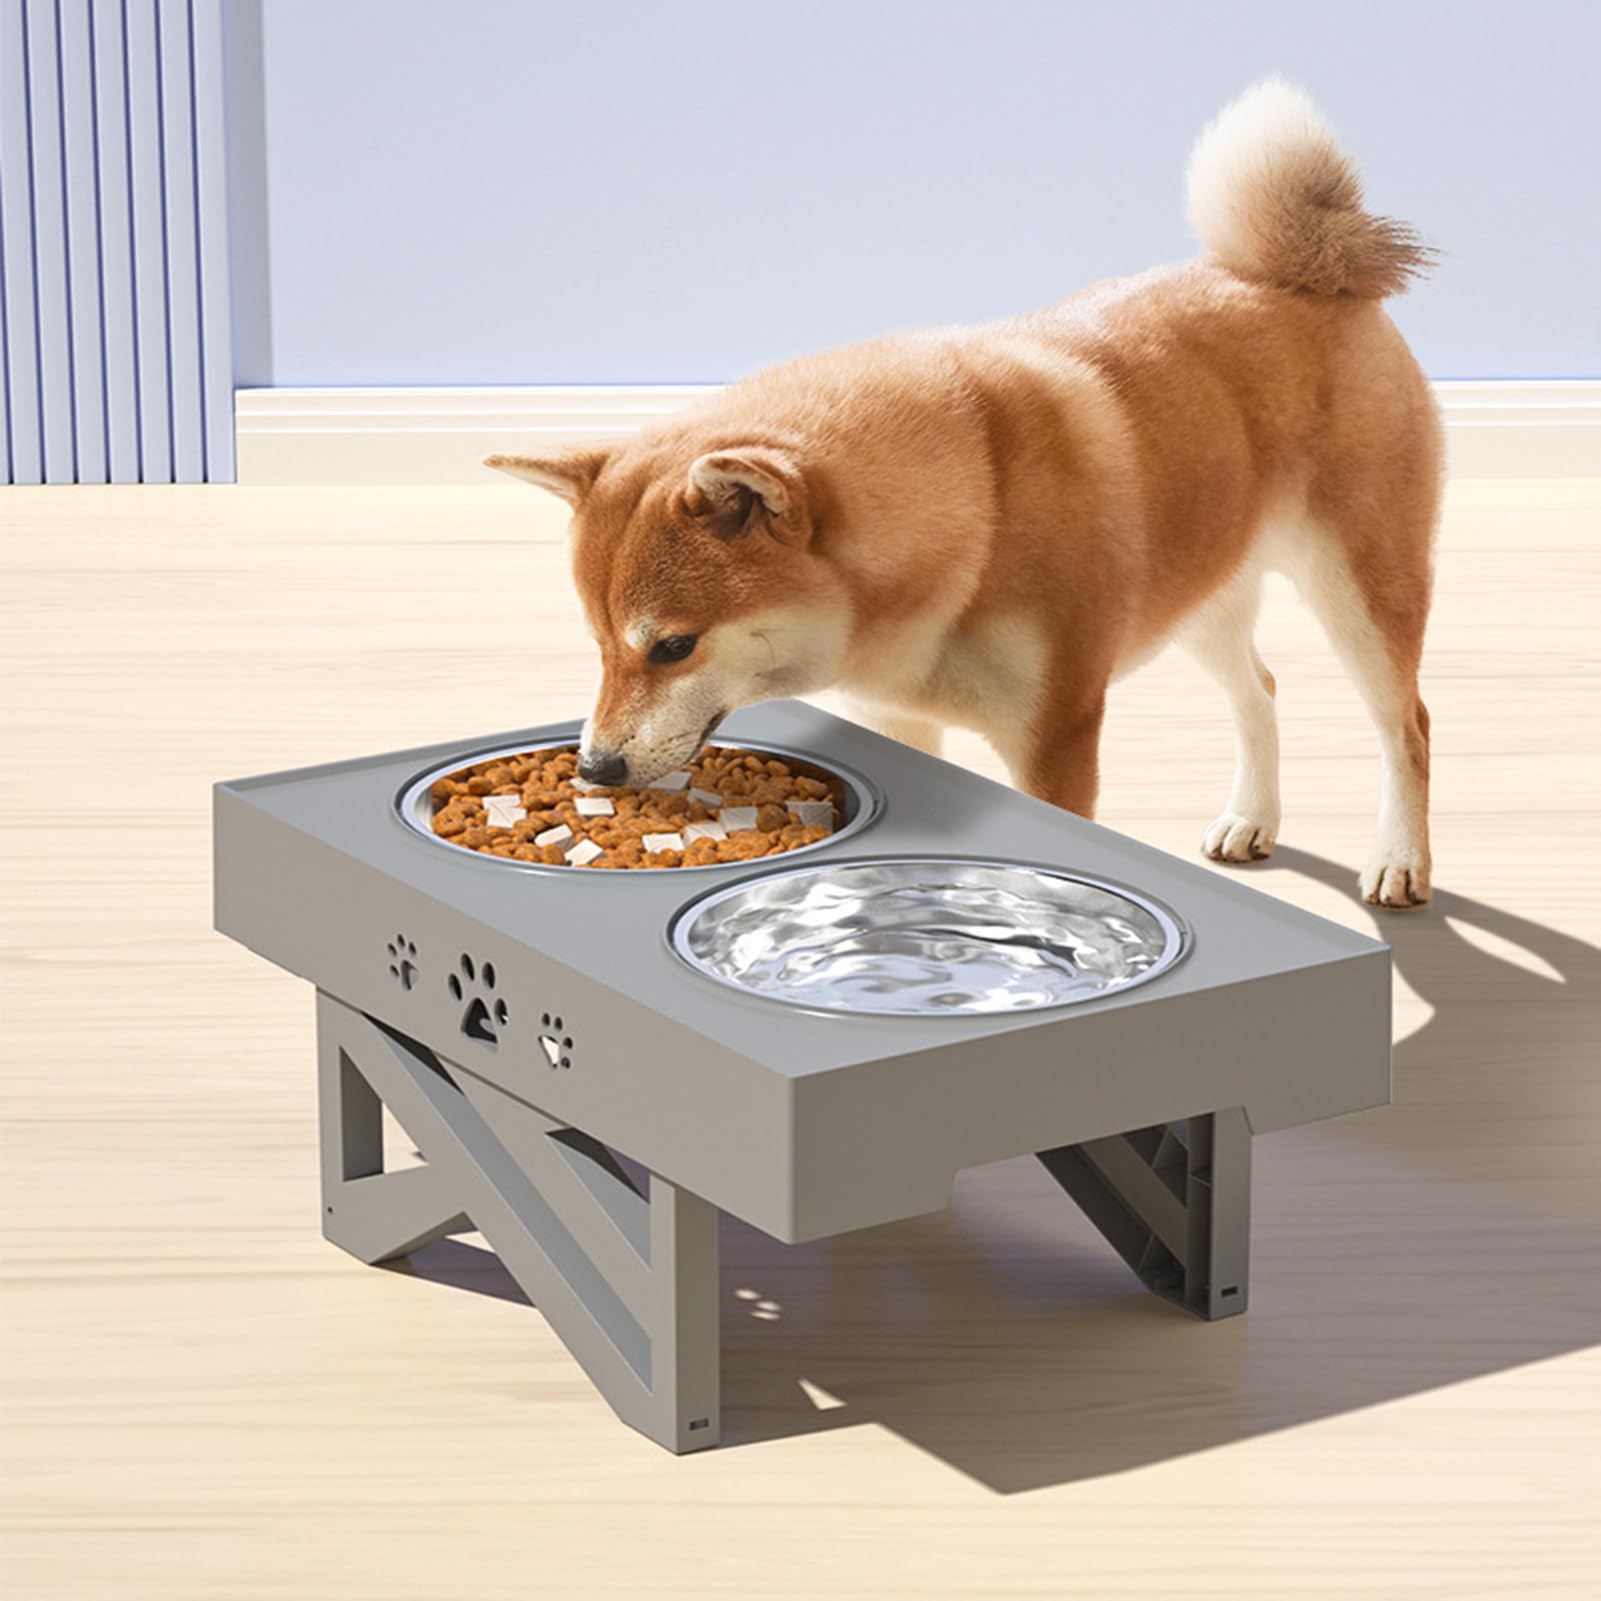 Triple-Height Adjustable Dual-Bowl Pet Feeding Table